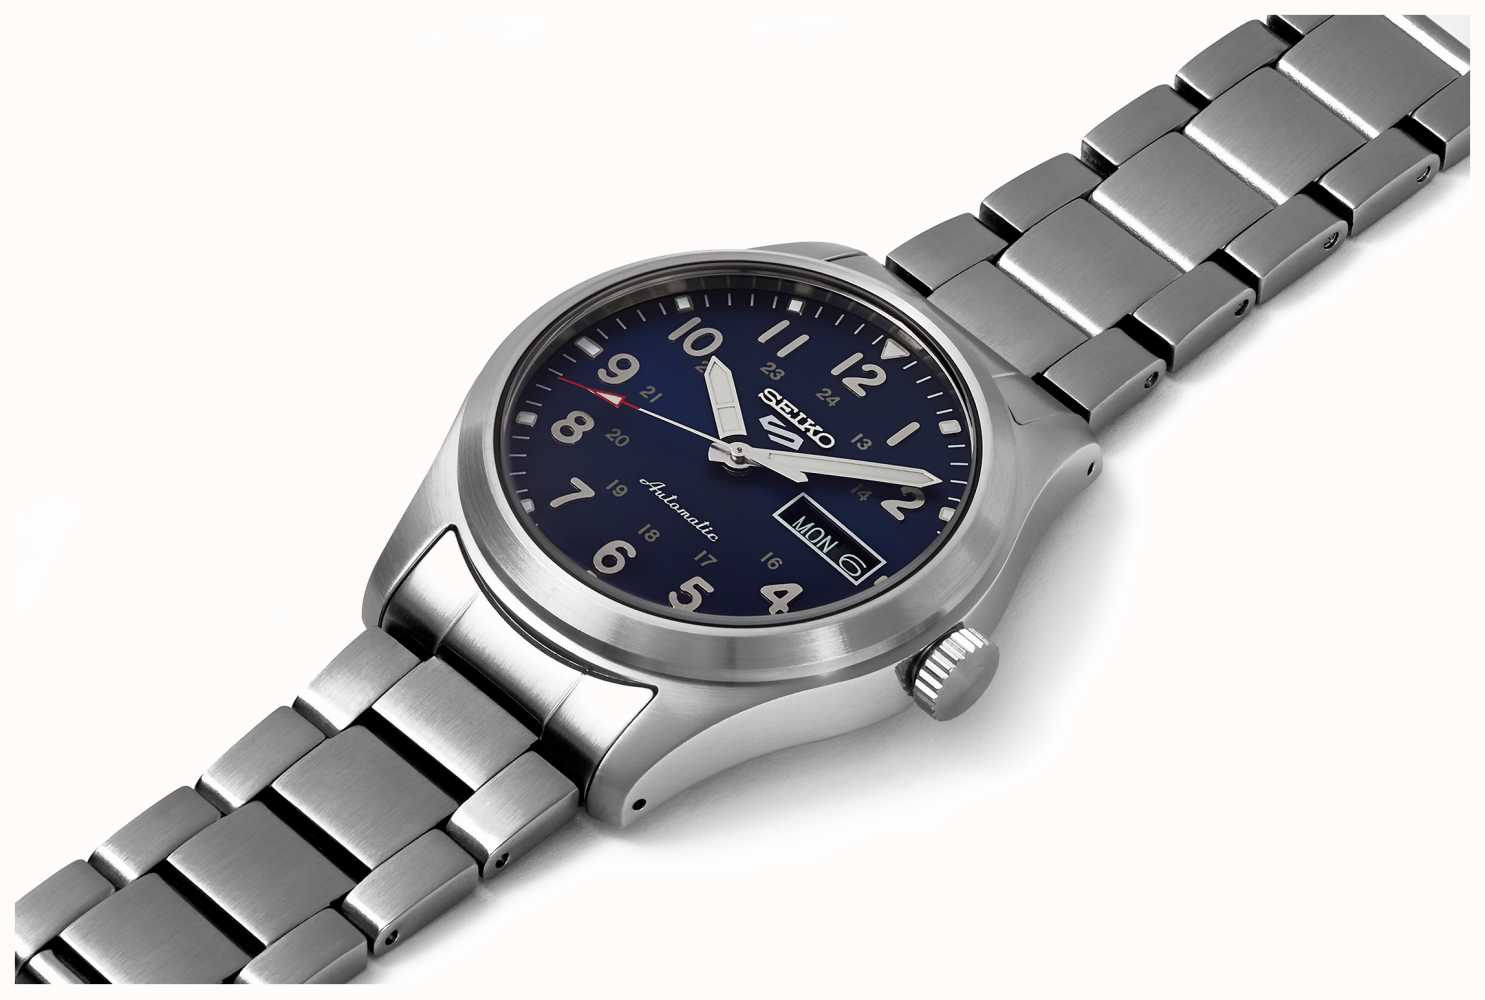 SRPG29K1 5 Sportplatz Blaues Seiko Watches™ Edelstahl First Zifferblatt - Class DEU Armband